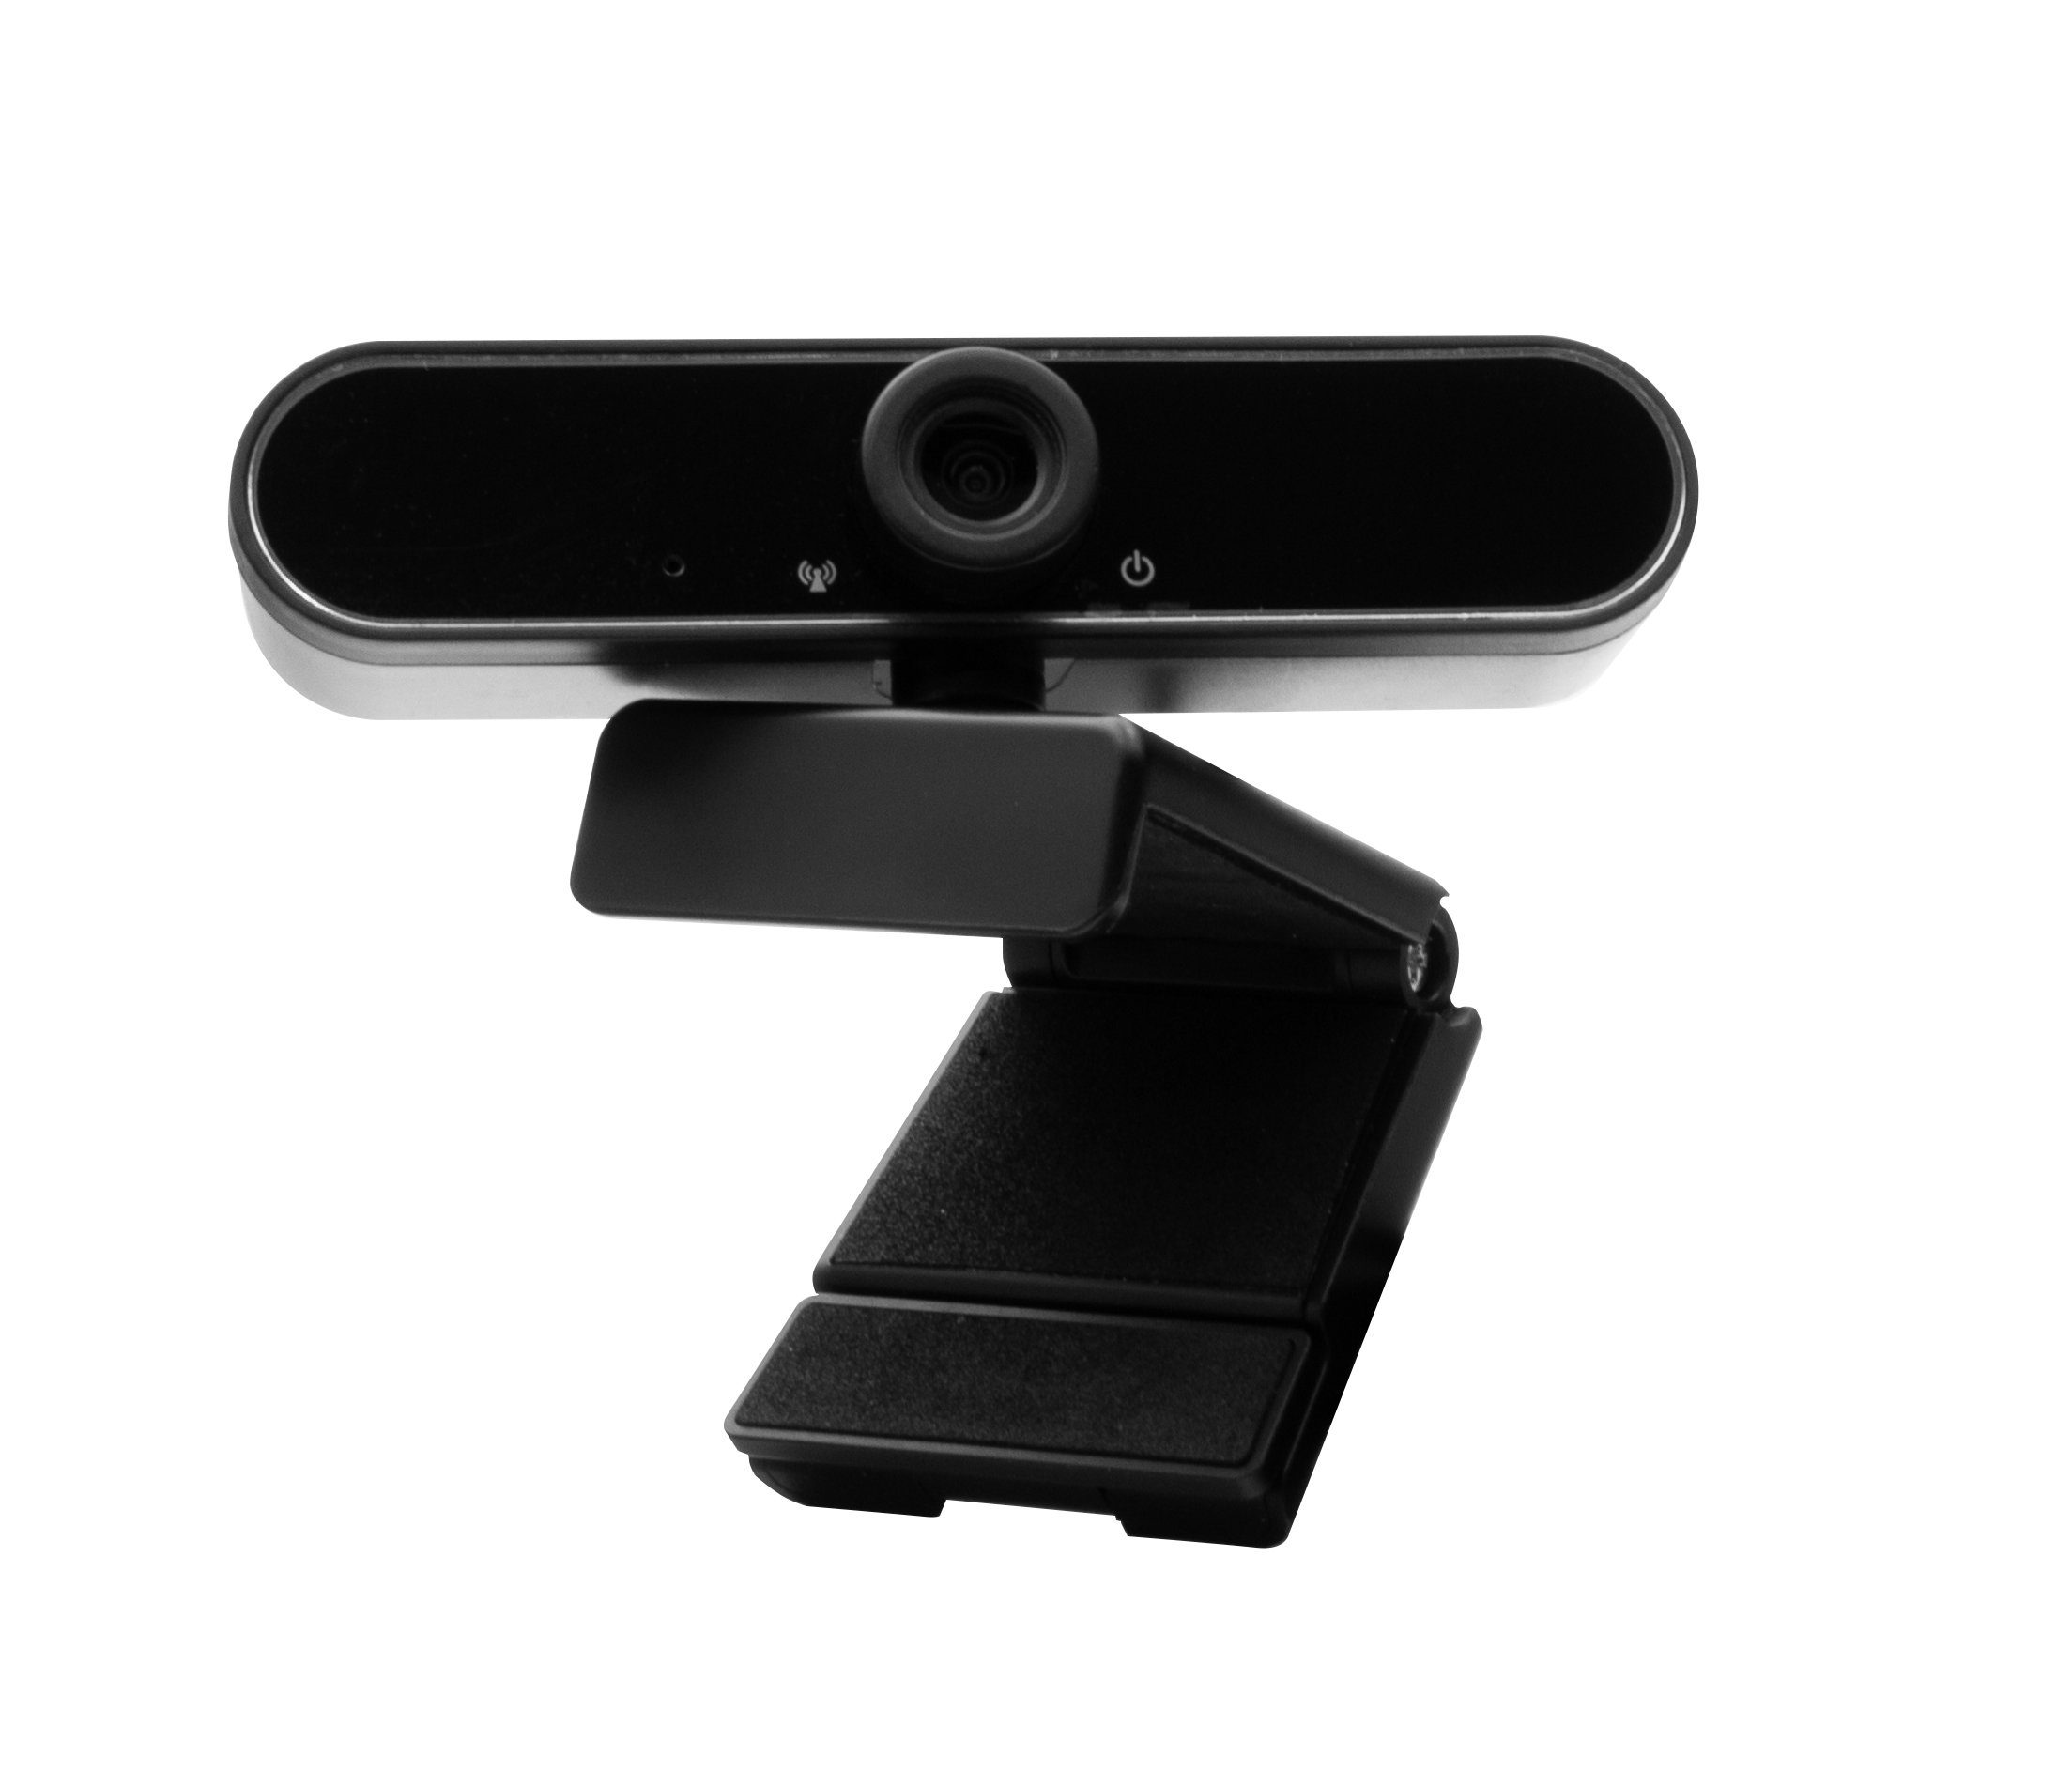 Hyrican Mikrofon USB, ST-SM50 Eingabegeräte-Set, + Headset kabelgebunden, Streamer + Startup Striker Studio schwarz DW1 Collection Webcam + + ST-GH530